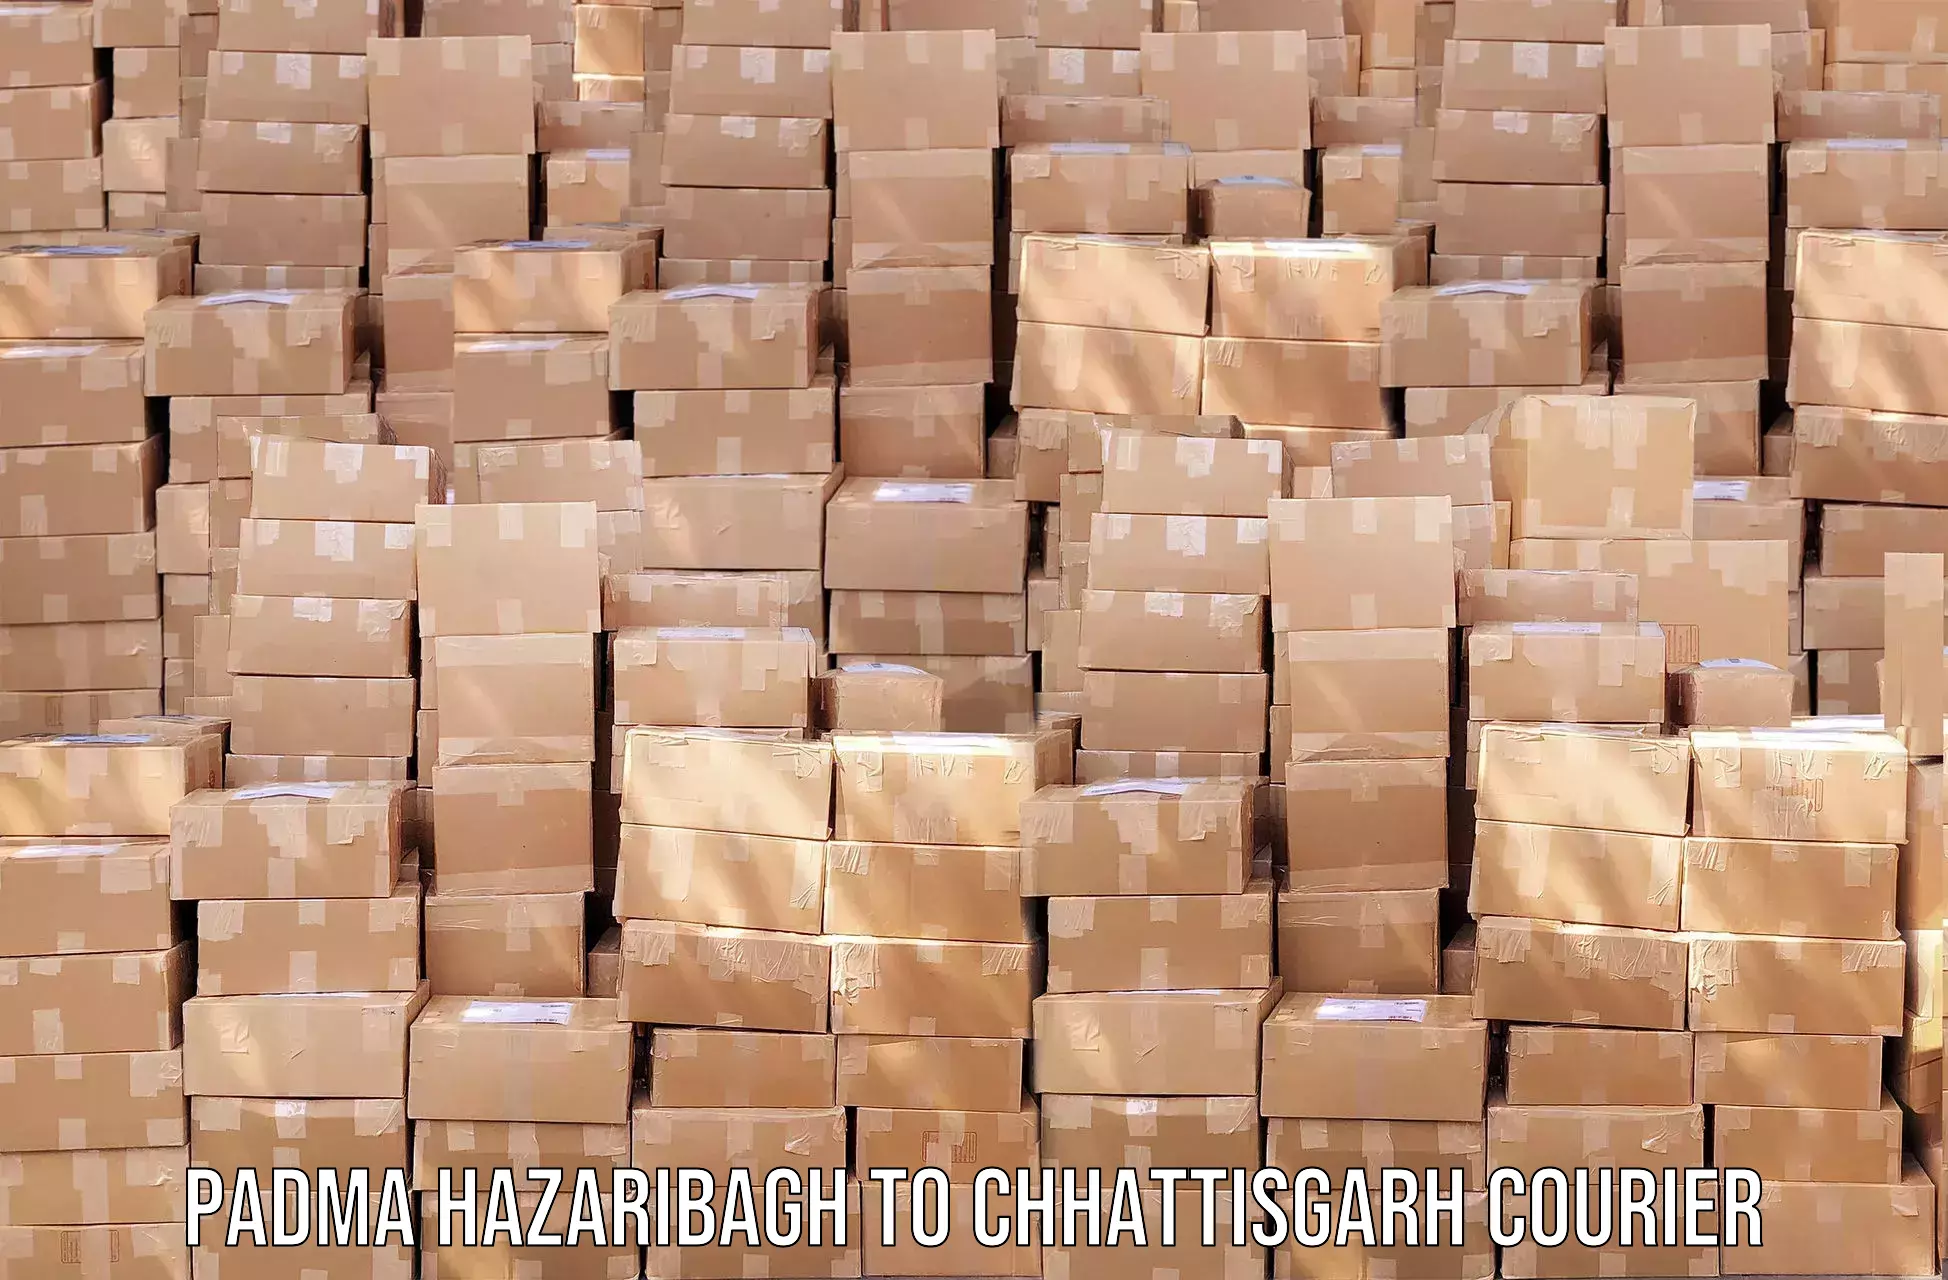 Efficient cargo handling Padma Hazaribagh to Mandhar